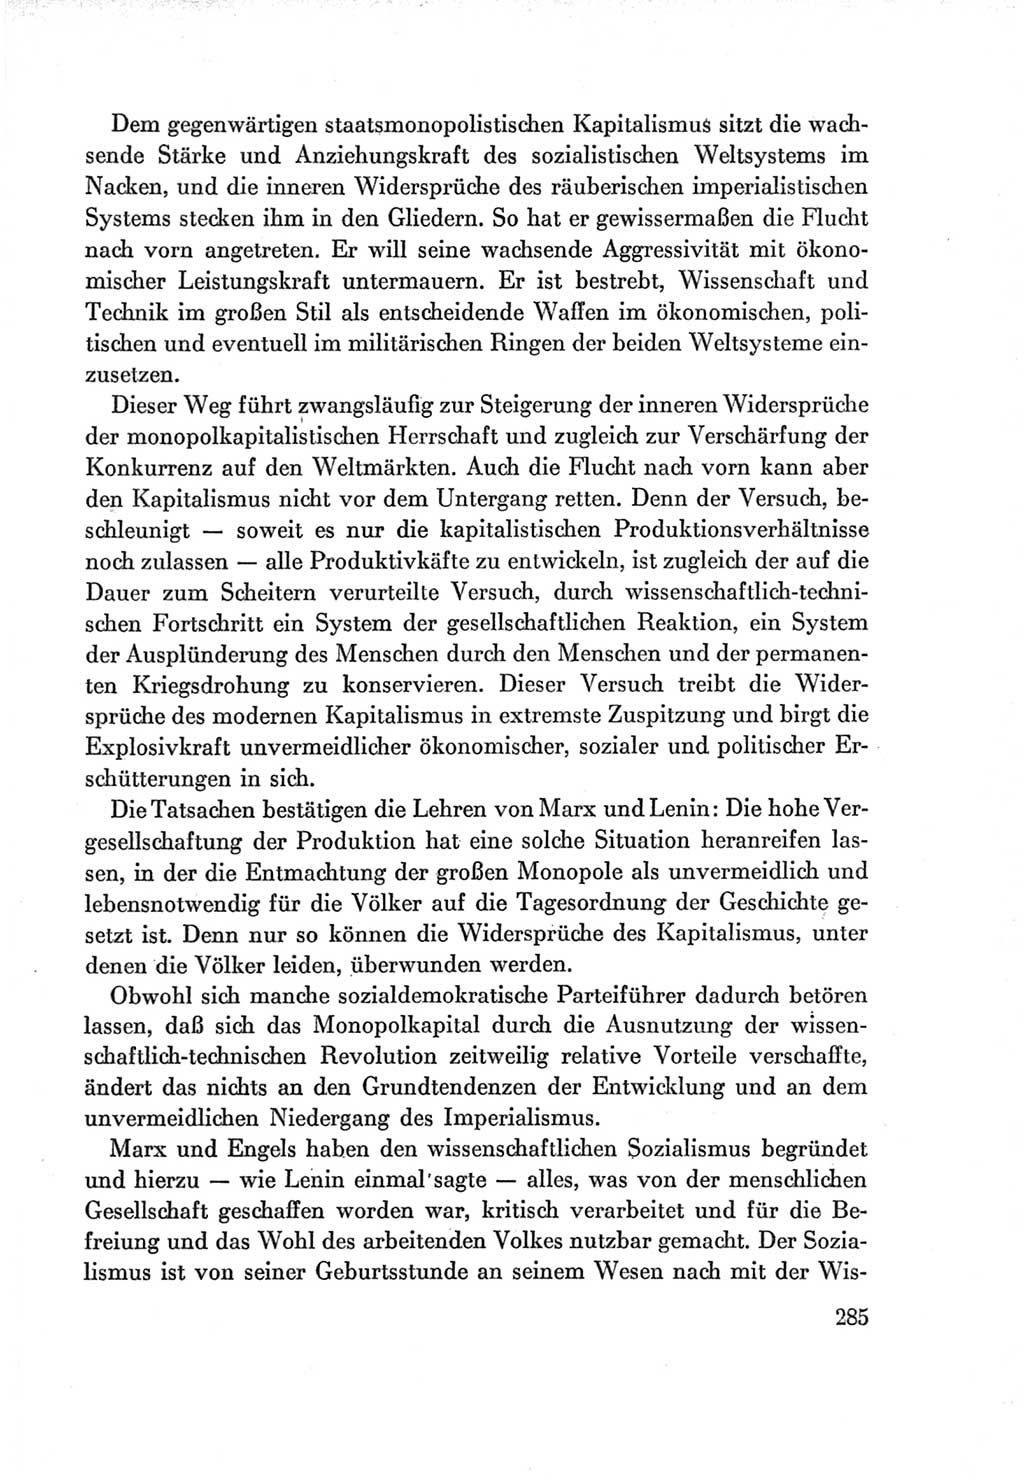 Protokoll der Verhandlungen des Ⅶ. Parteitages der Sozialistischen Einheitspartei Deutschlands (SED) [Deutsche Demokratische Republik (DDR)] 1967, Band Ⅰ, Seite 285 (Prot. Verh. Ⅶ. PT SED DDR 1967, Bd. Ⅰ, S. 285)